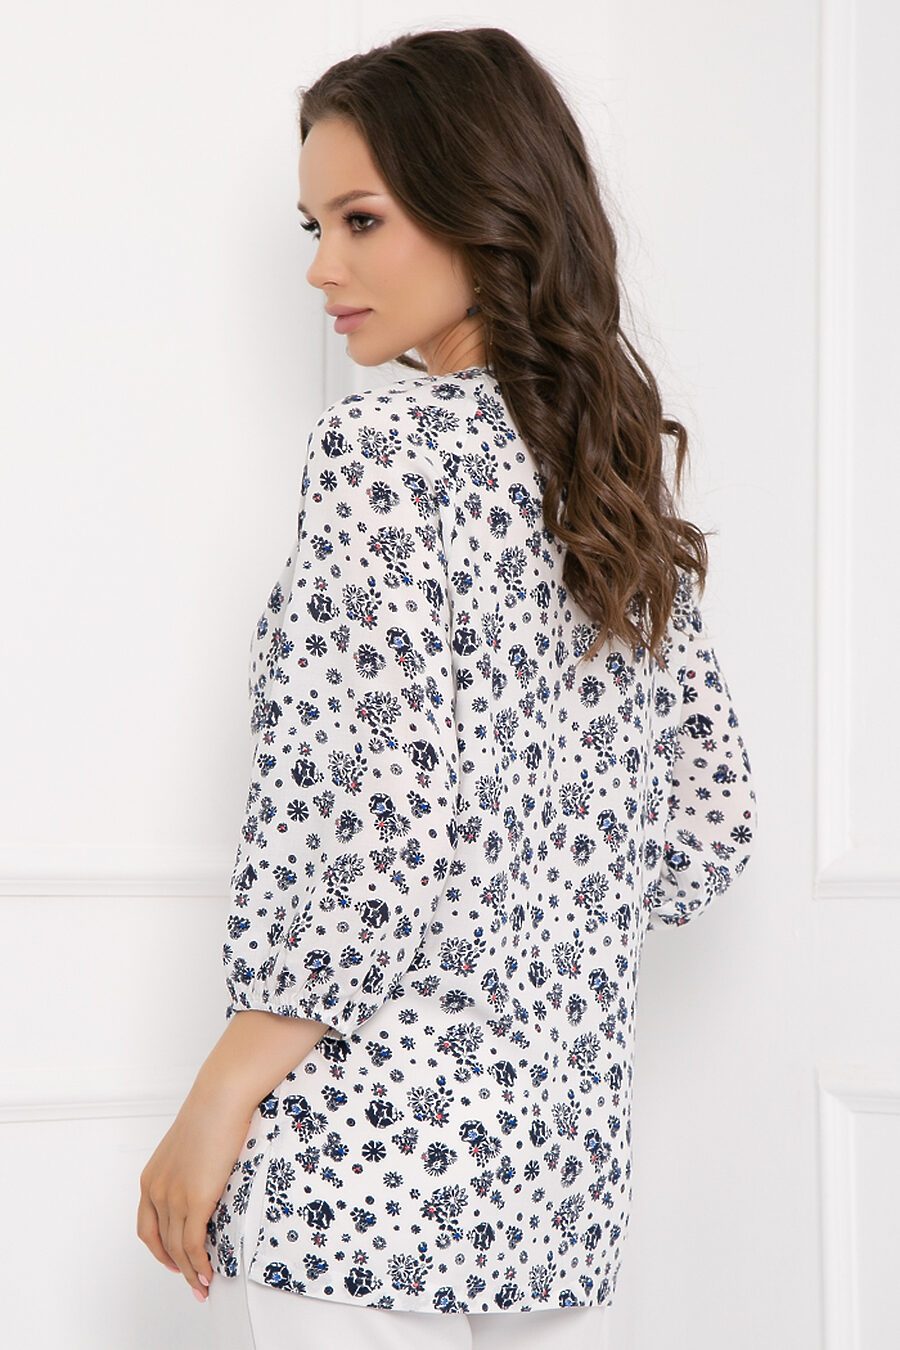 Блуза BELLOVERA (775284), купить в Moyo.moda